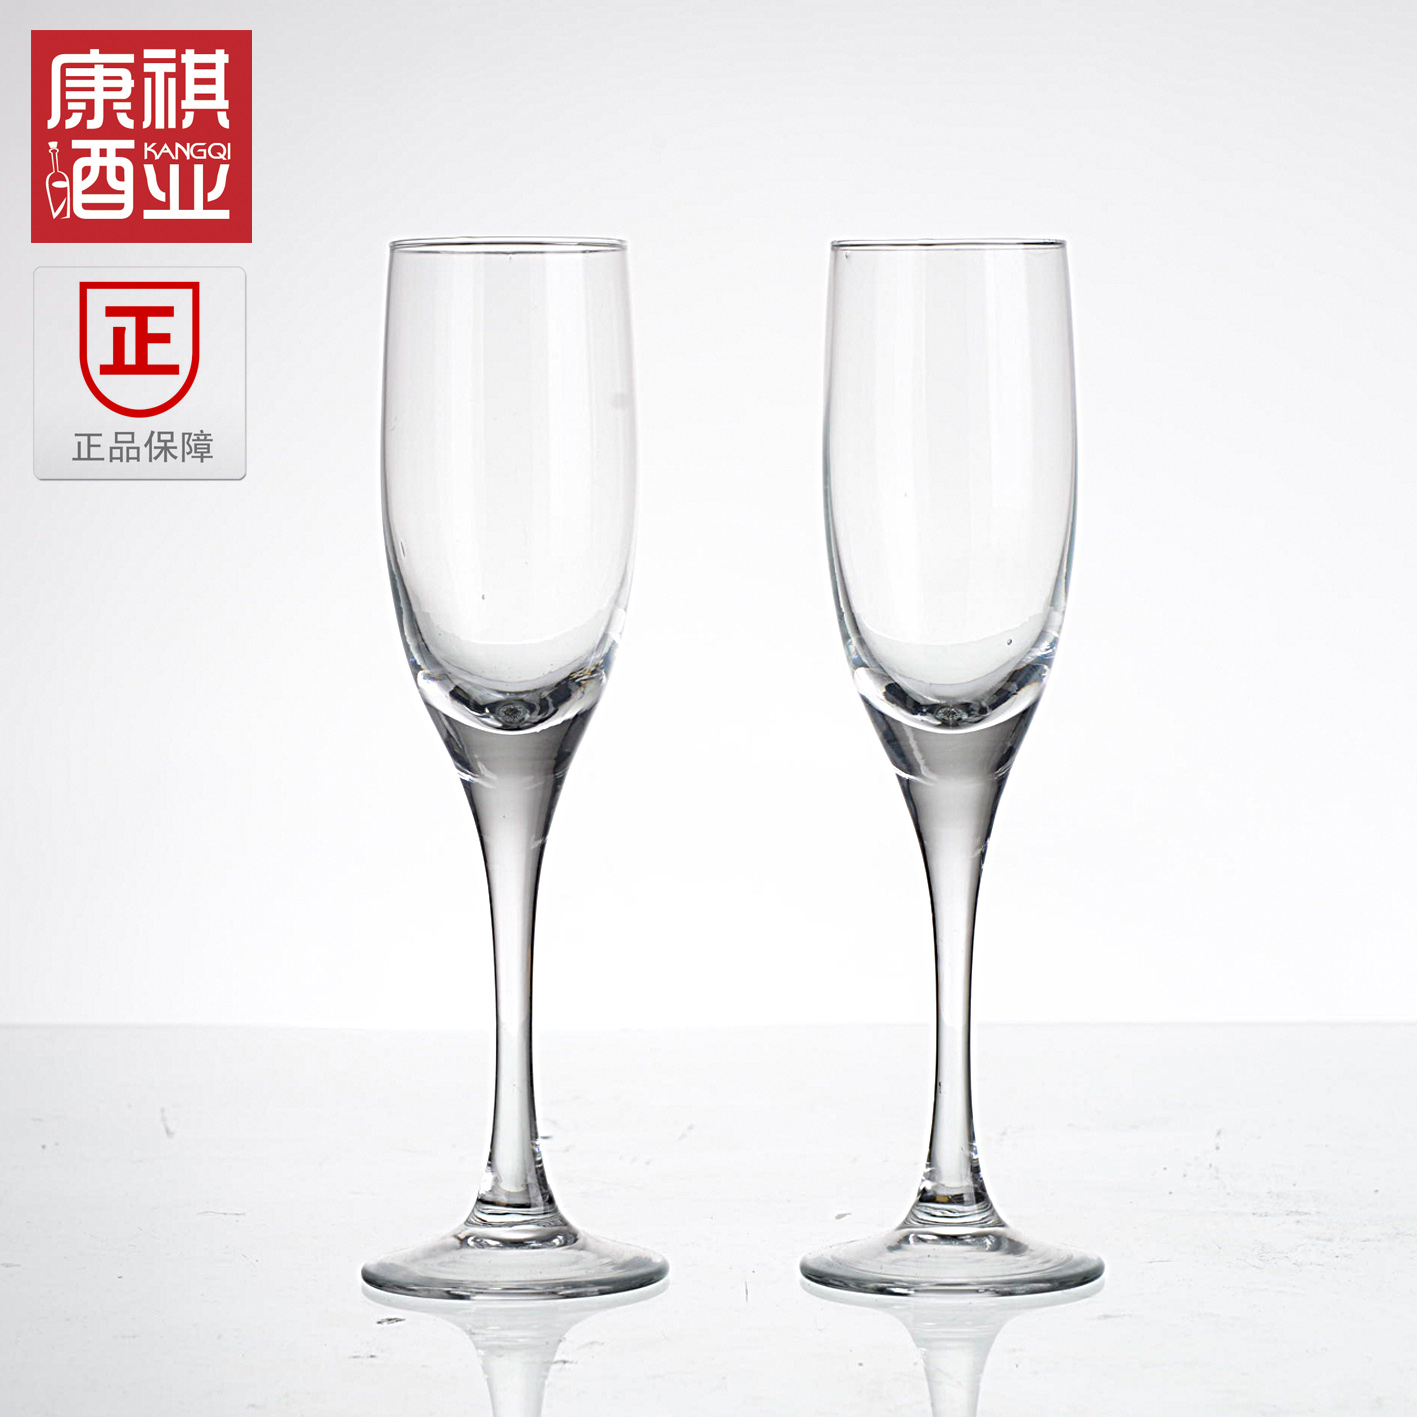 厂家直销中国驰名高档晶质玻璃杯兴宝兴水晶红葡萄酒香槟杯375ml